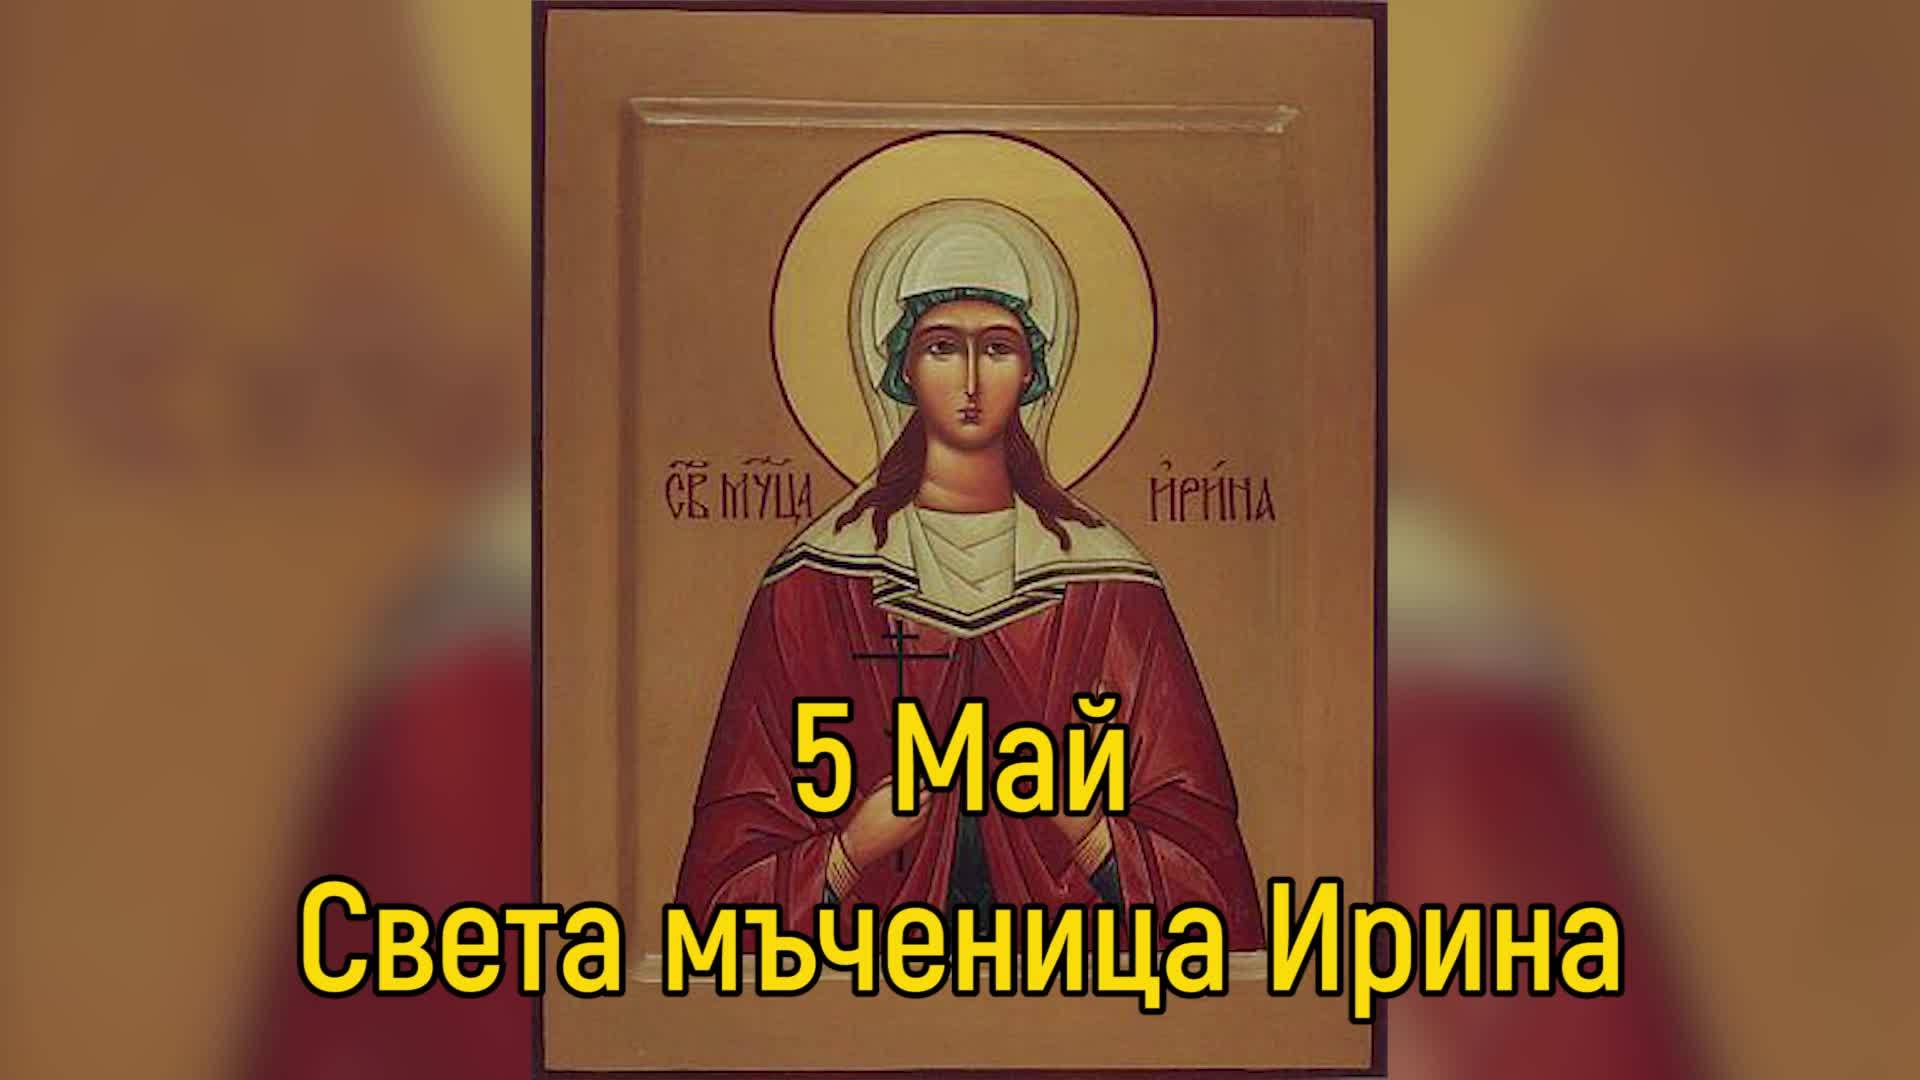 5 Май - Света мъченица Ирина